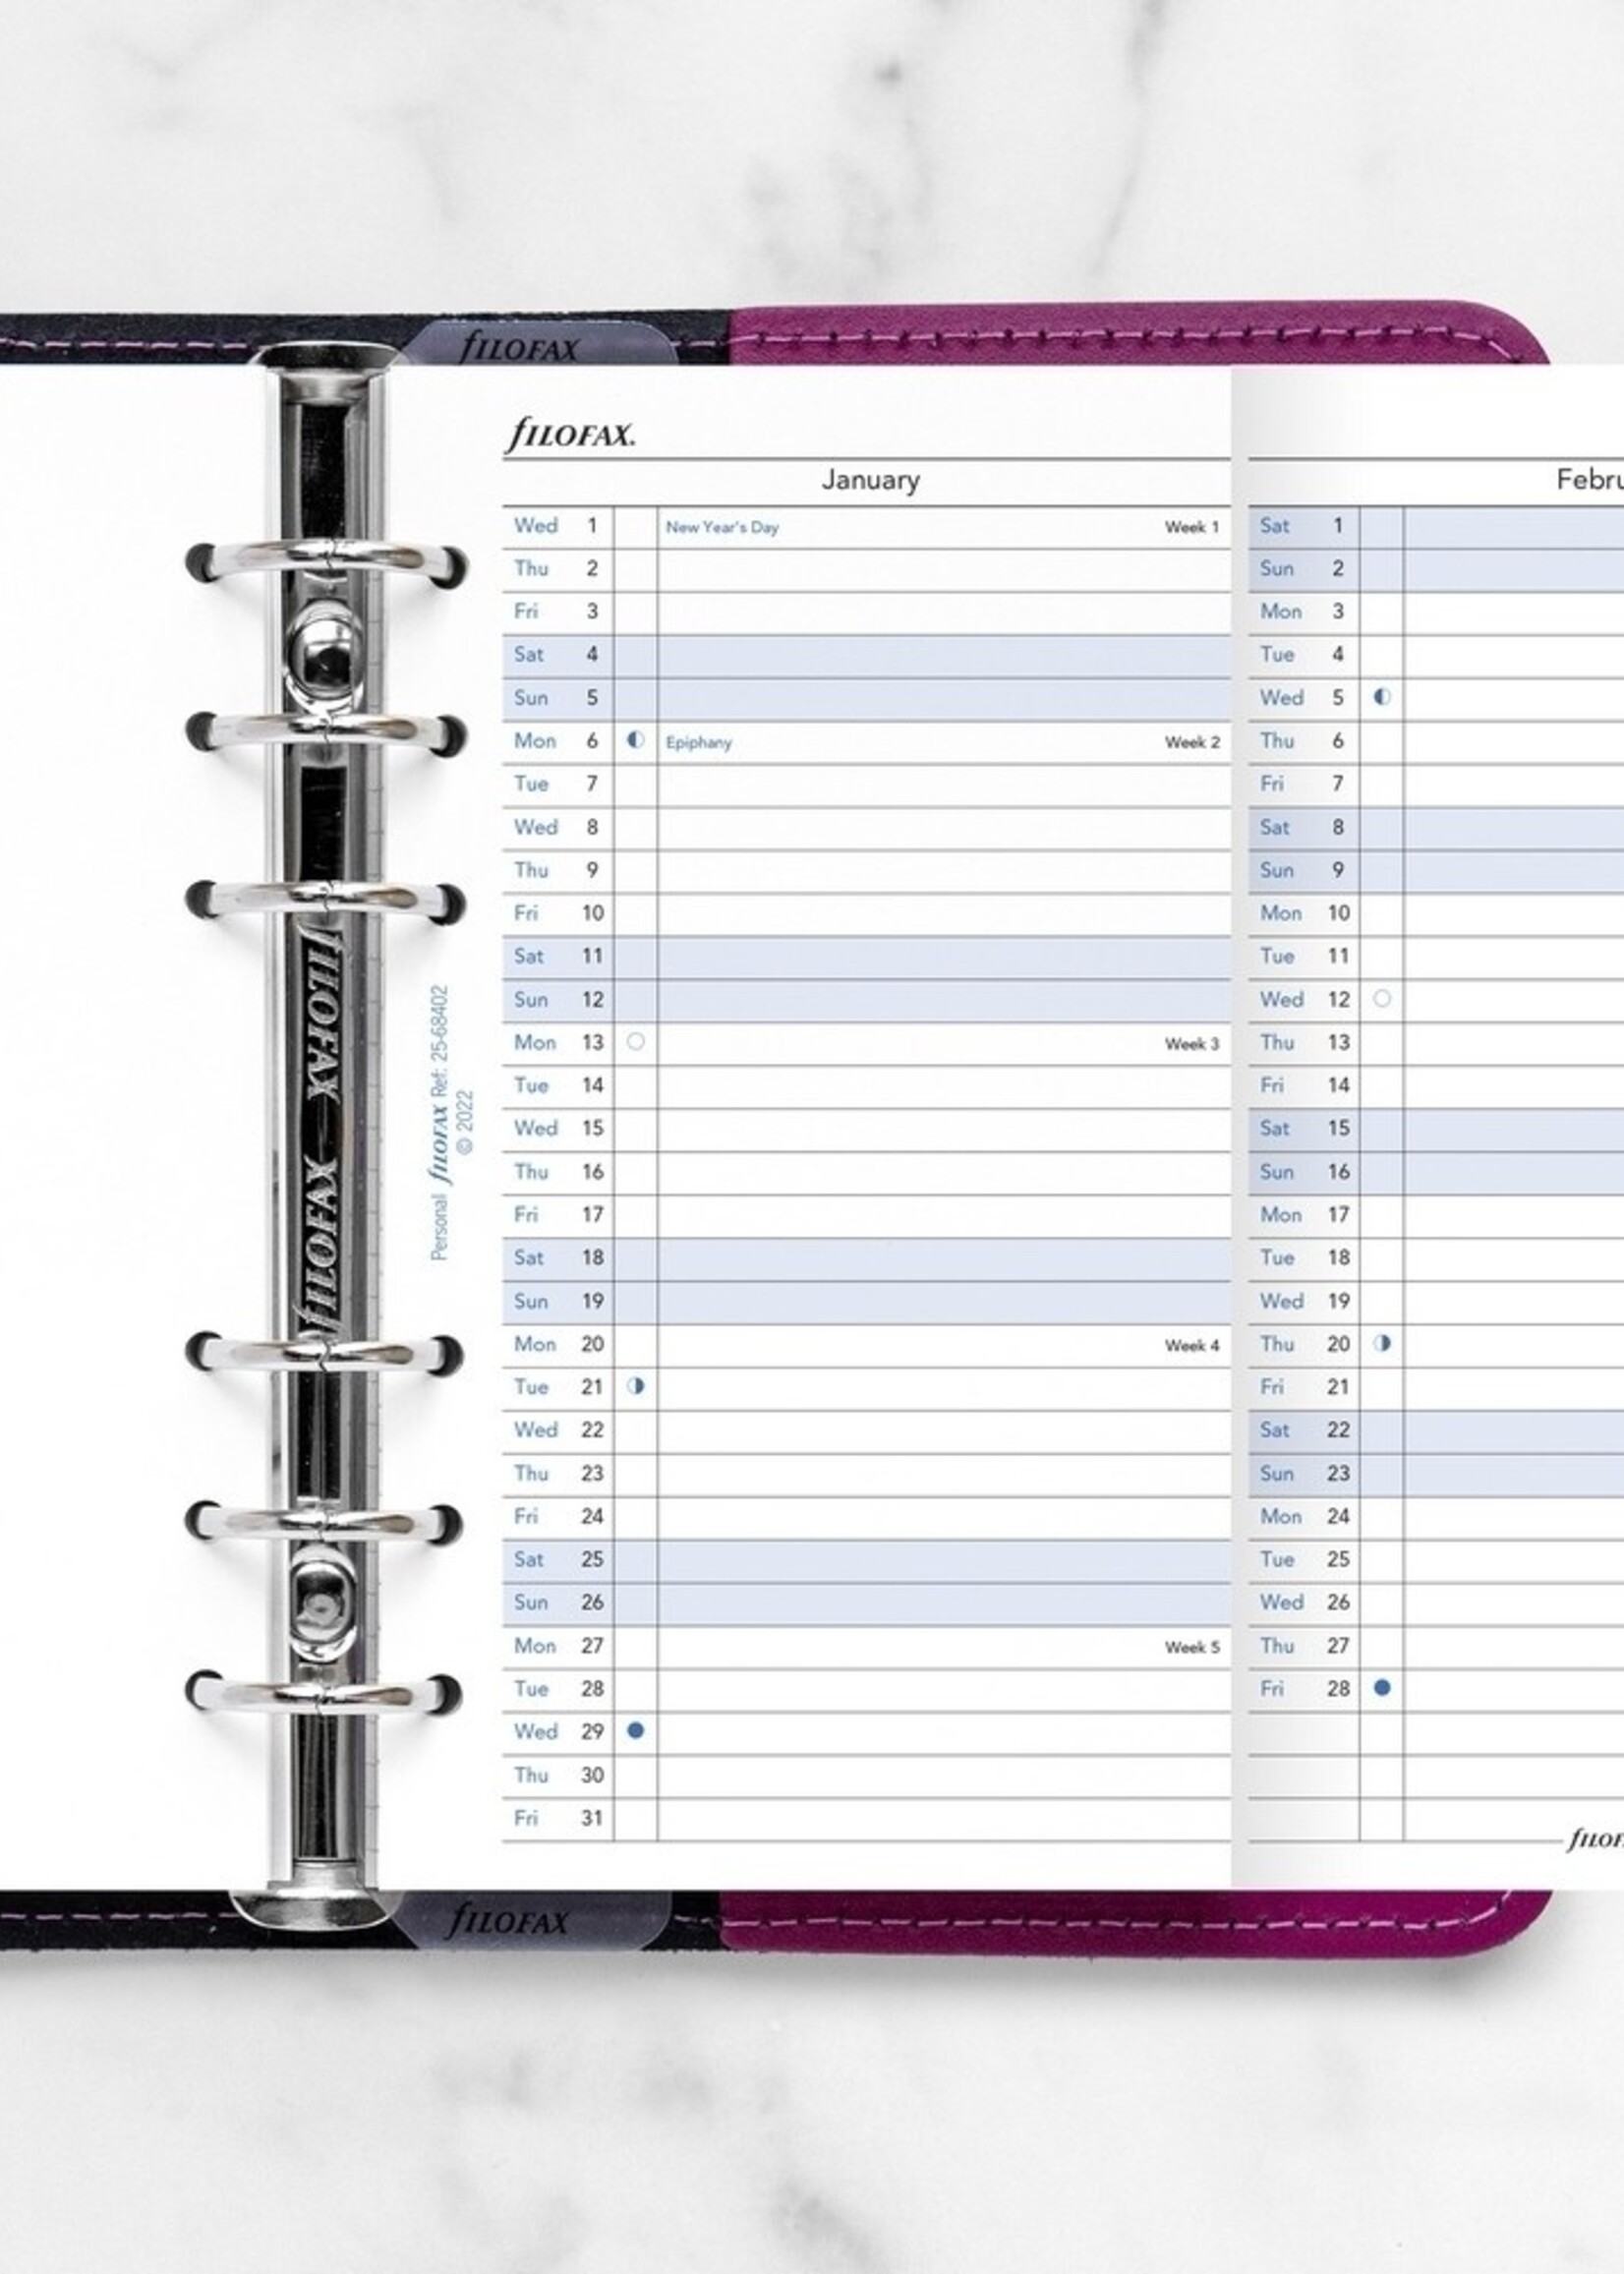 Filofax Personal Kalendereinlage 2025 Jahresplan Leporello Weiß englisch